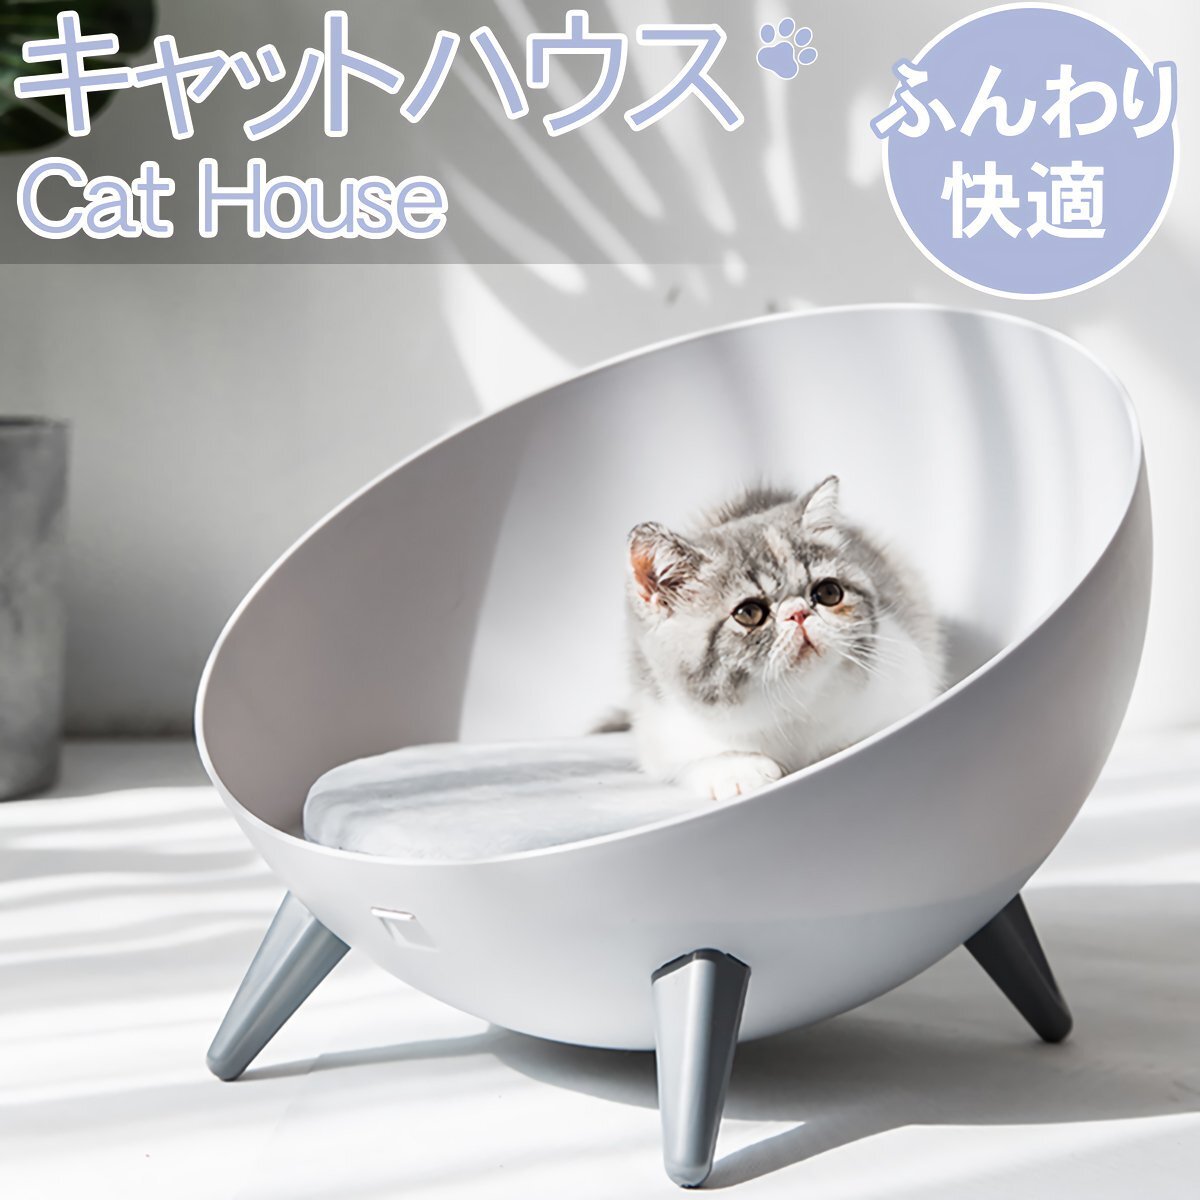 1 иен ~ распродажа NH-01 домик для кошек домашнее животное bed домашнее животное house кошка кошка сопутствующие товары .. house кошка для подушка домашнее животное симпатичный интерьер 